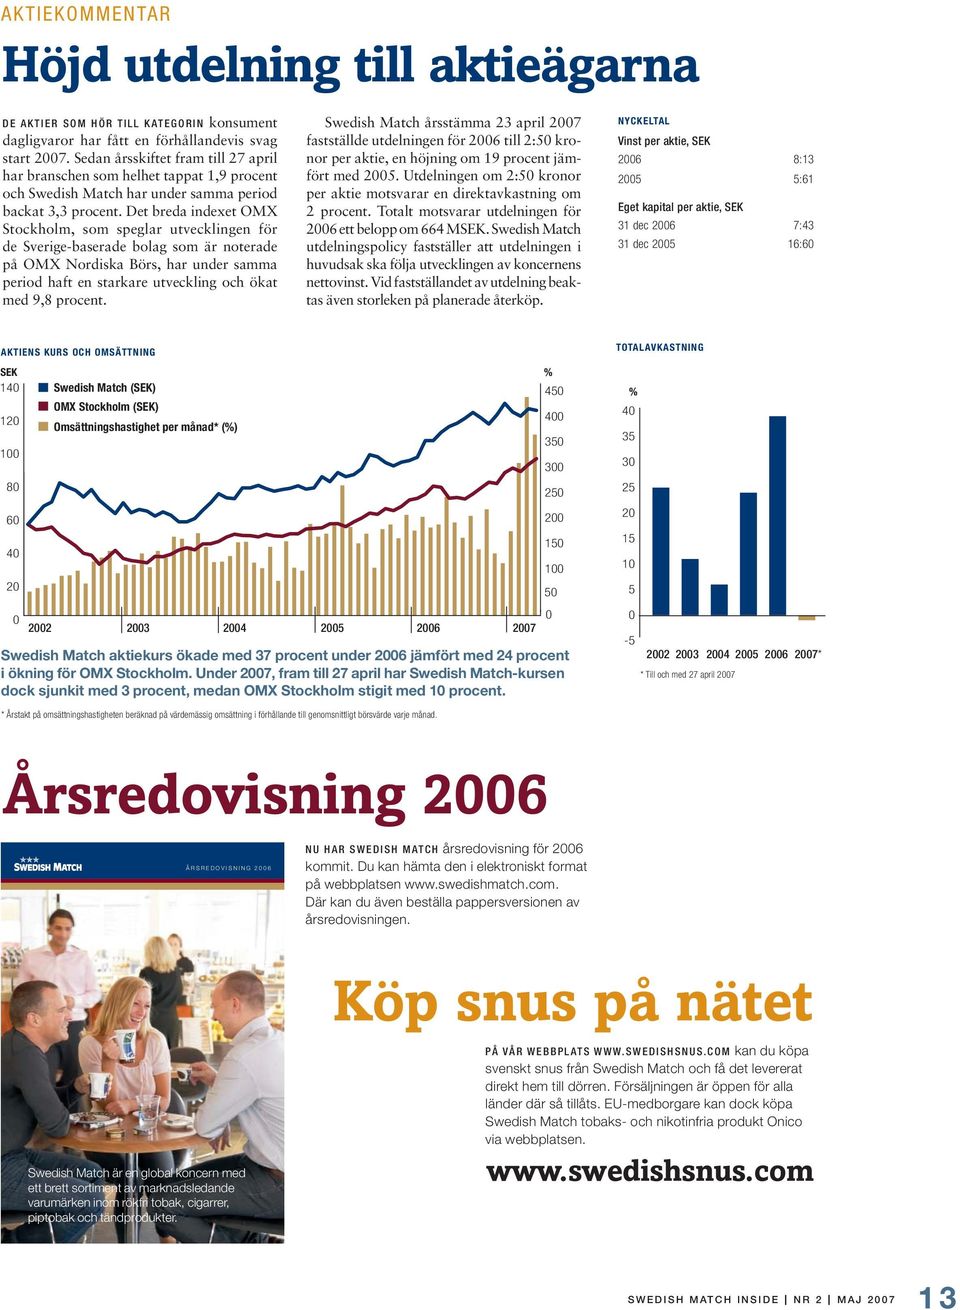 Det breda indexet OMX Stockholm, som speglar utvecklingen för de Sverige-baserade bolag som är noterade på OMX Nordiska Börs, har under samma period haft en starkare utveckling och ökat med 9,8